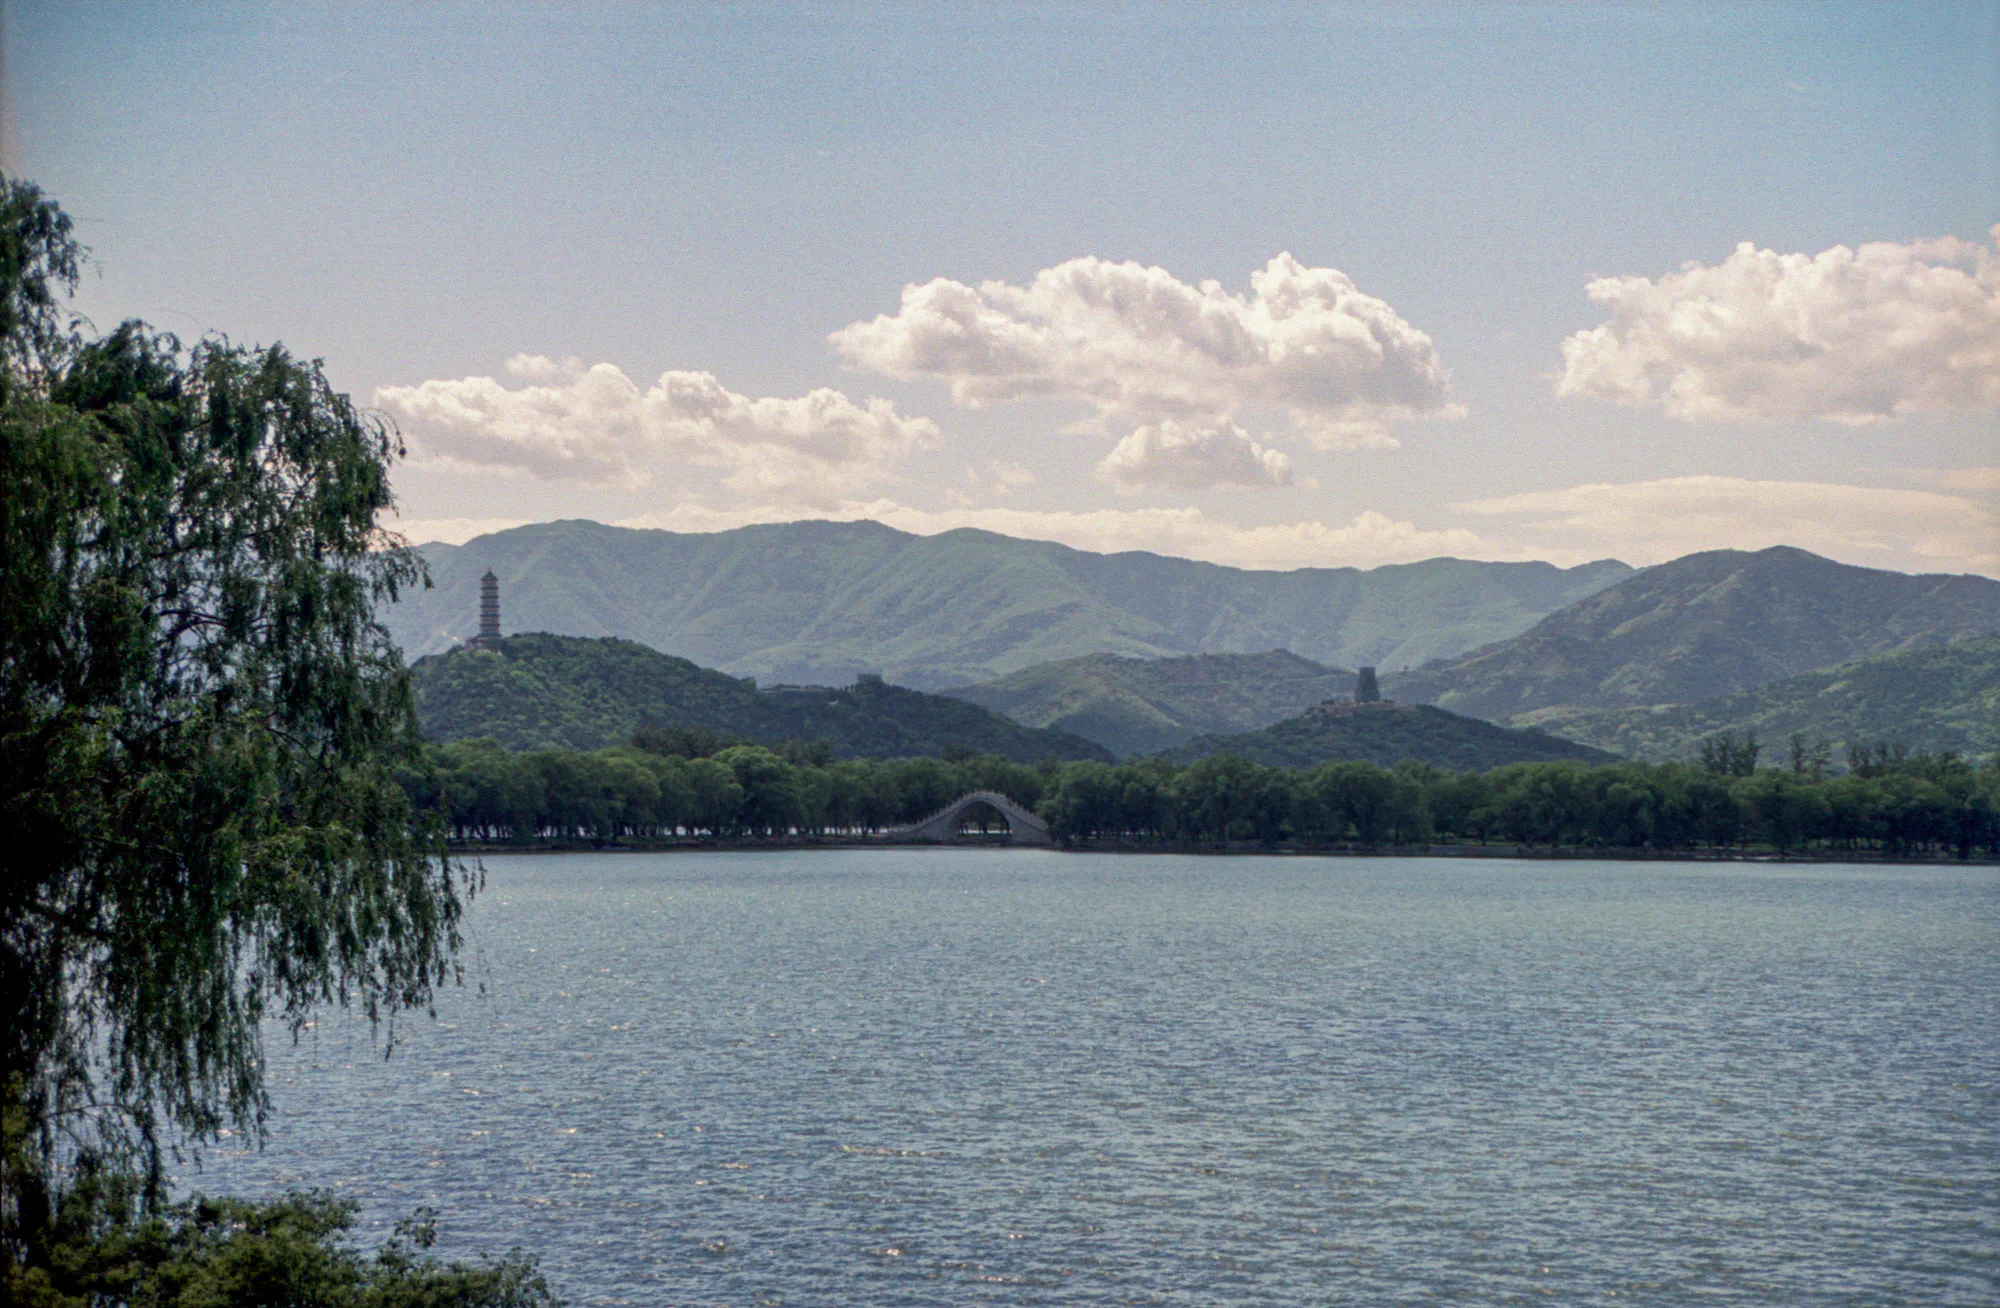 Looking west across Kunming Lake